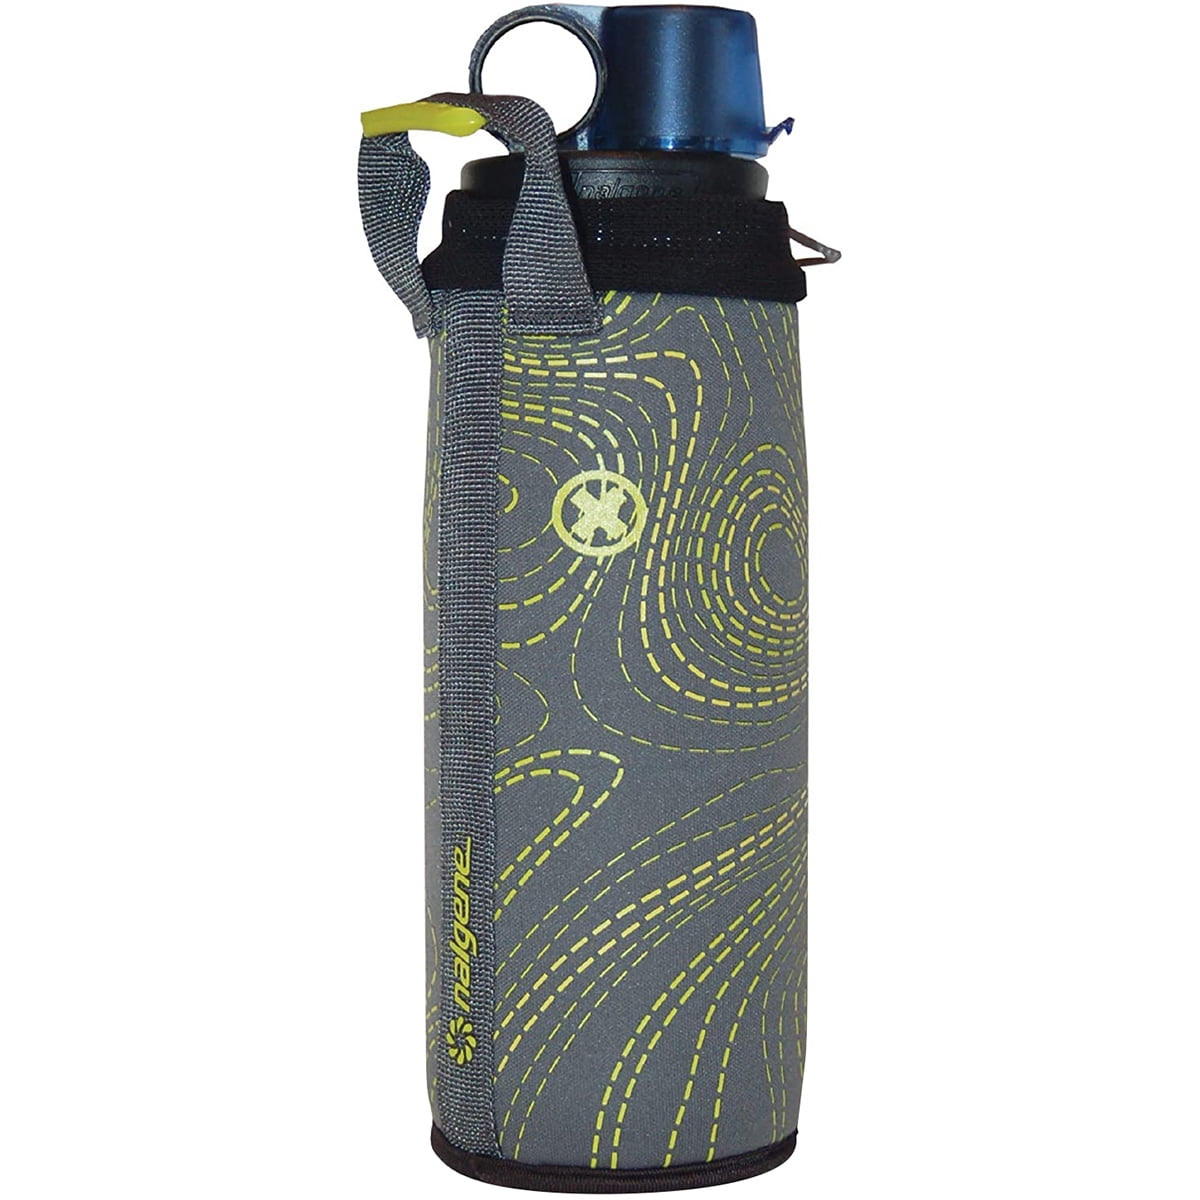 Nalgene Bottle Sleeve - Neoprene Water Bottle Sleeve - Prevents  Condensation, Insulates Beverages Bo…See more Nalgene Bottle Sleeve -  Neoprene Water